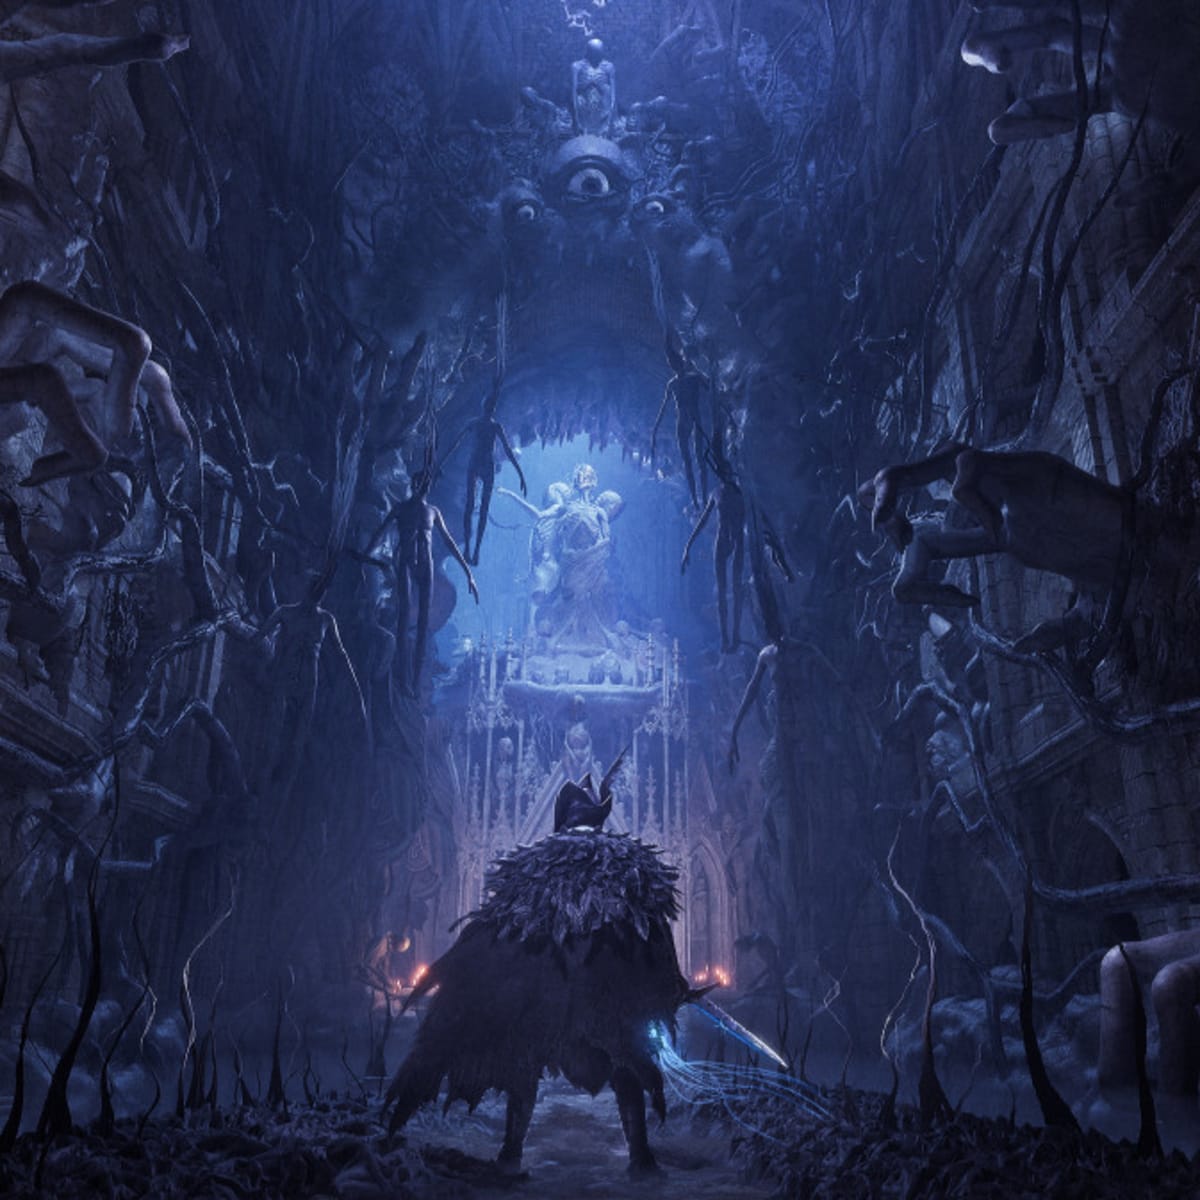 Lords of the Fallen 2 está previsto para ser lançado em 2023 para Xbox  Series, PS5 e PC